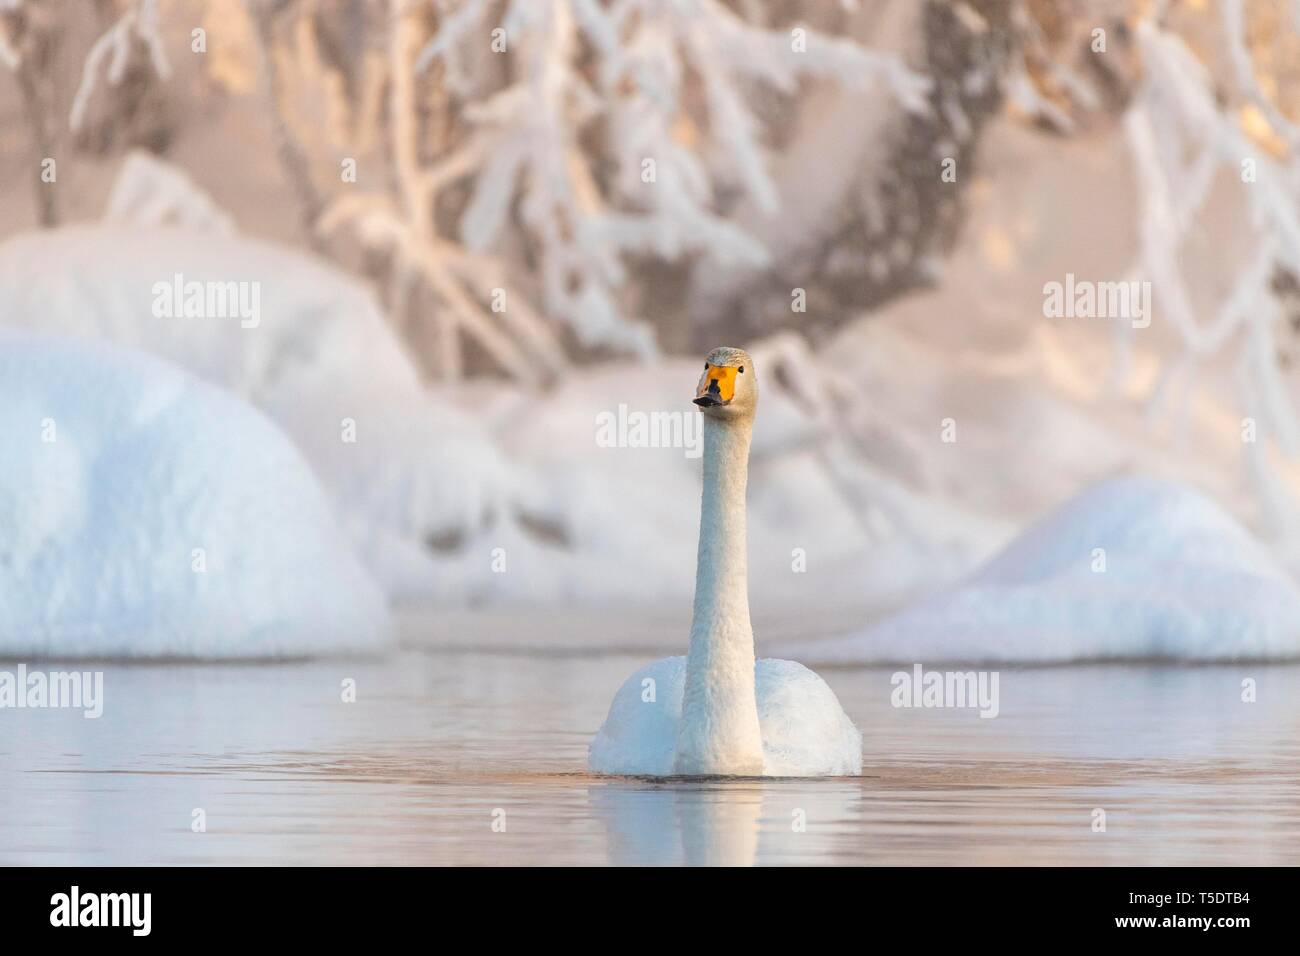 Whooper swan (Cygnus cygnus) nuotate nel lago, Snowy a riva, Muonio, Lapponia, Finlandia Foto Stock